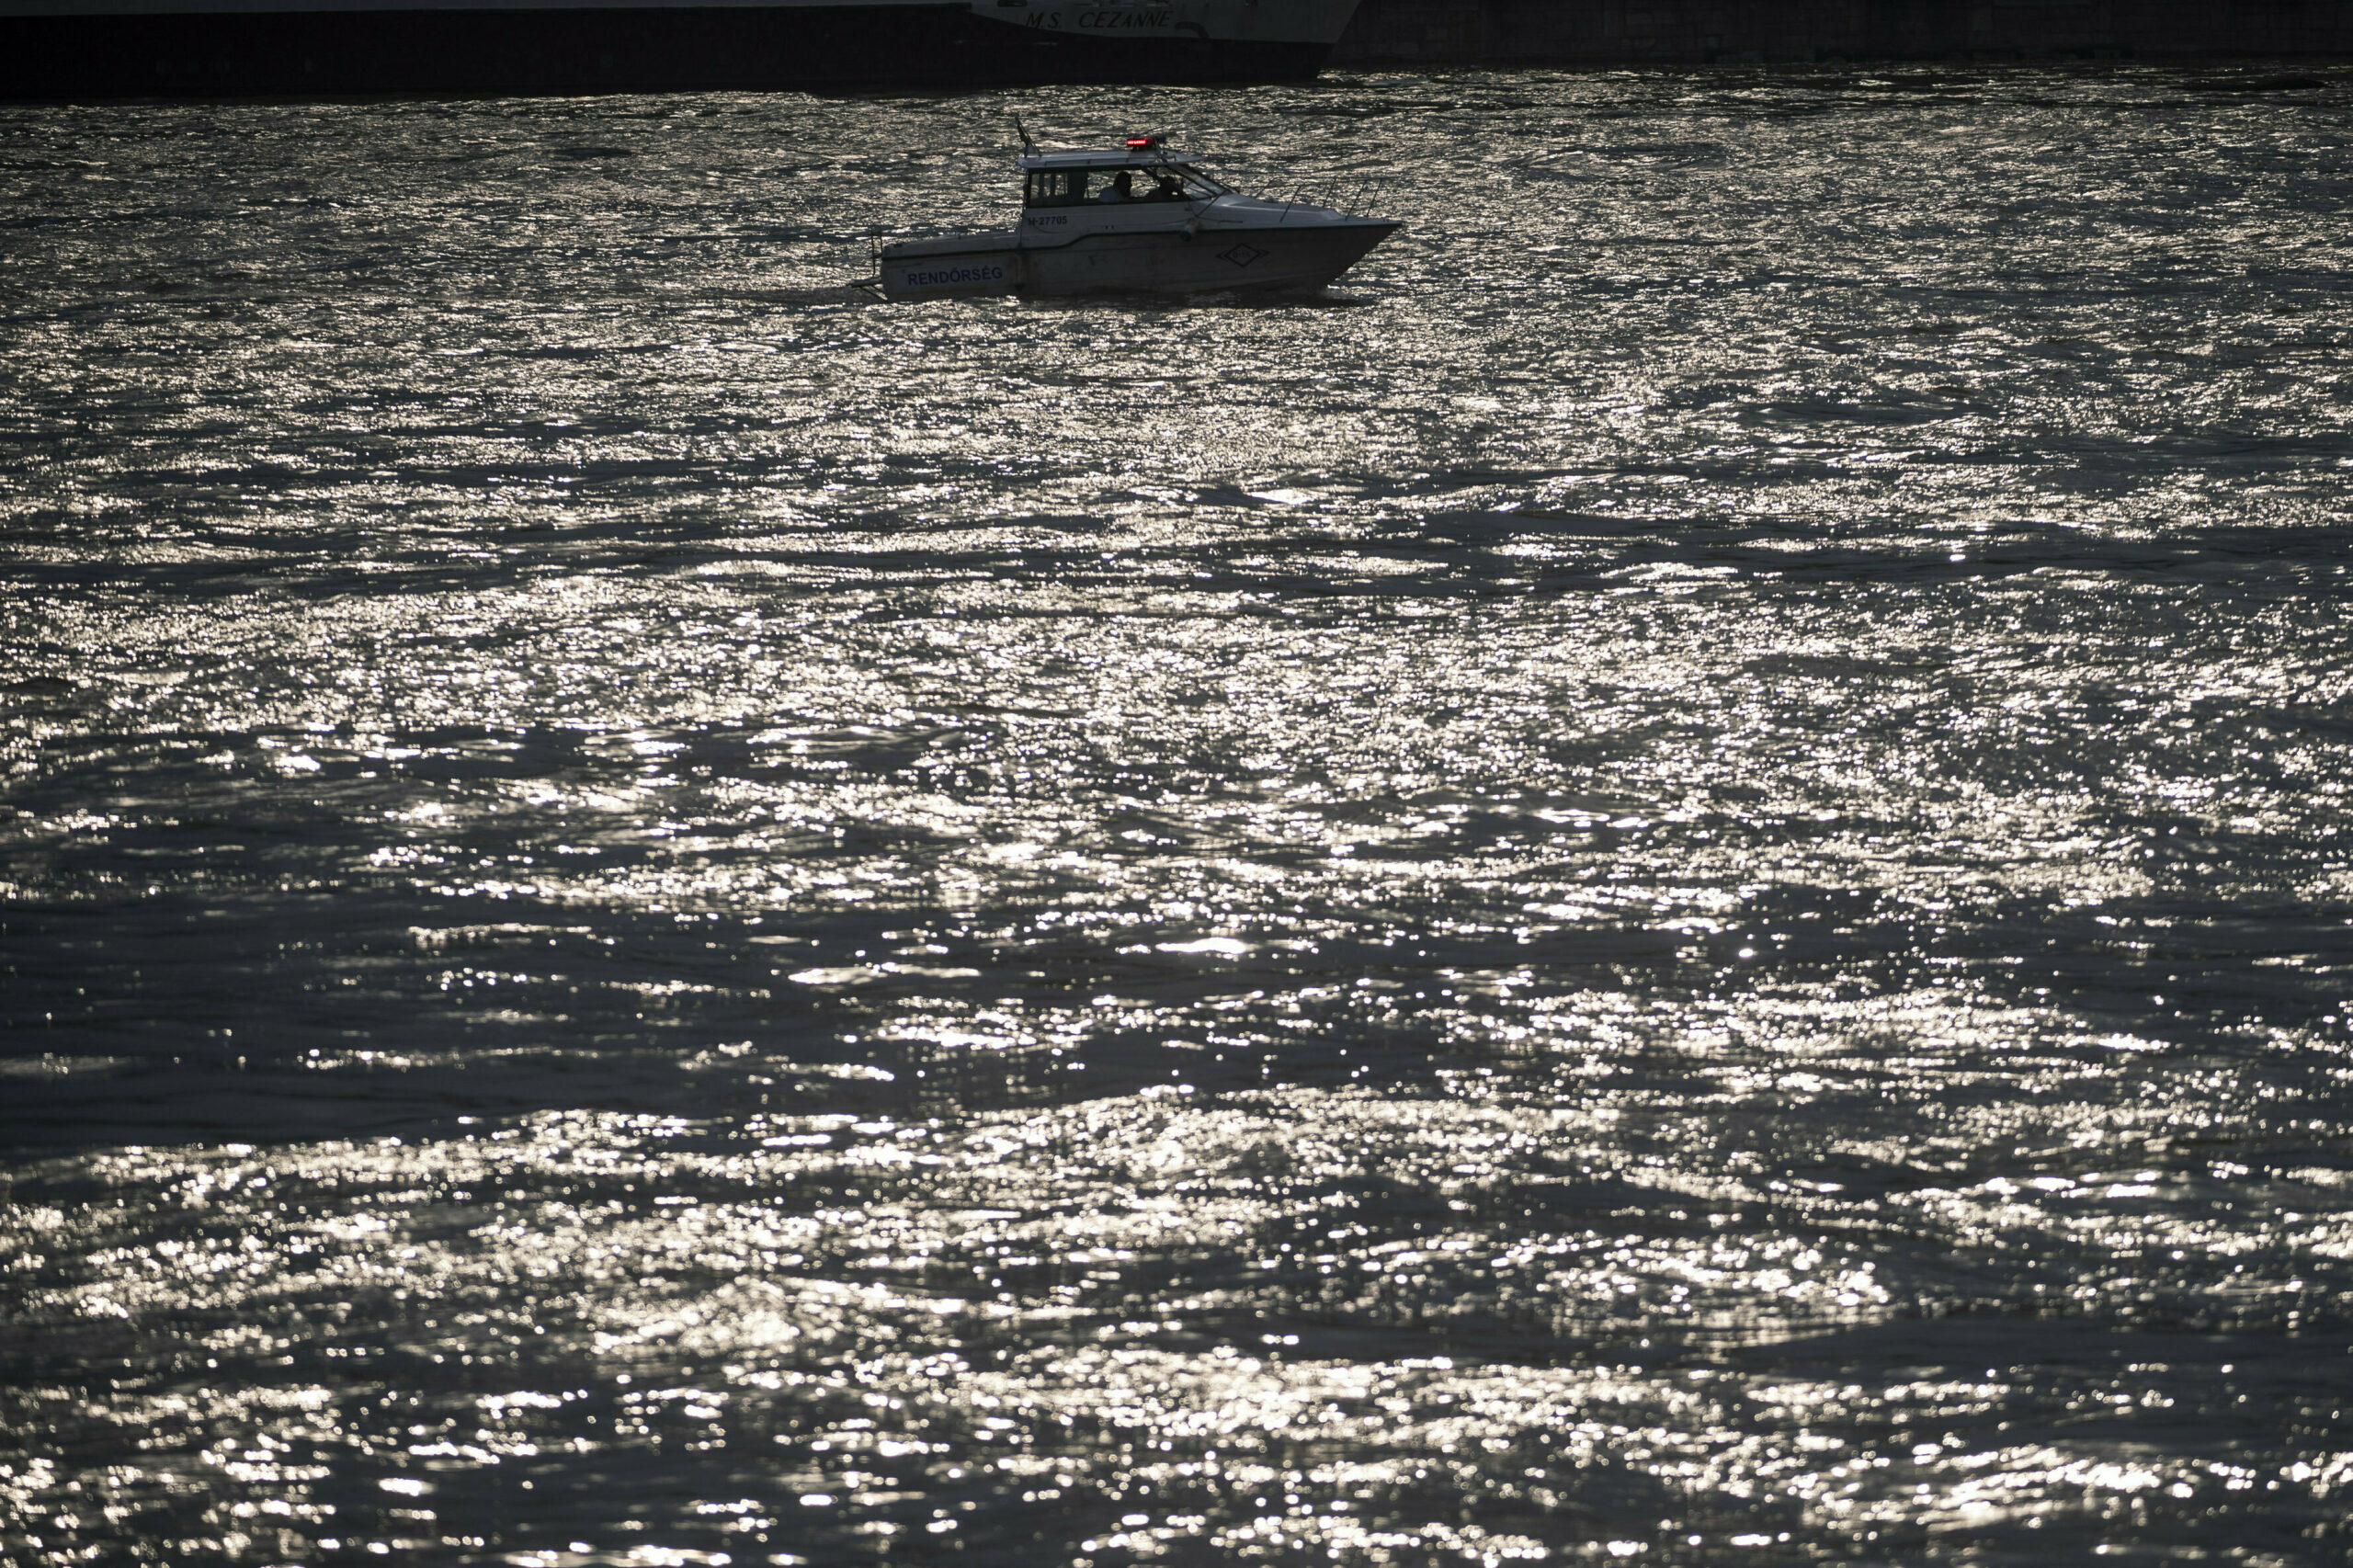 Polizeiboot auf der Donau